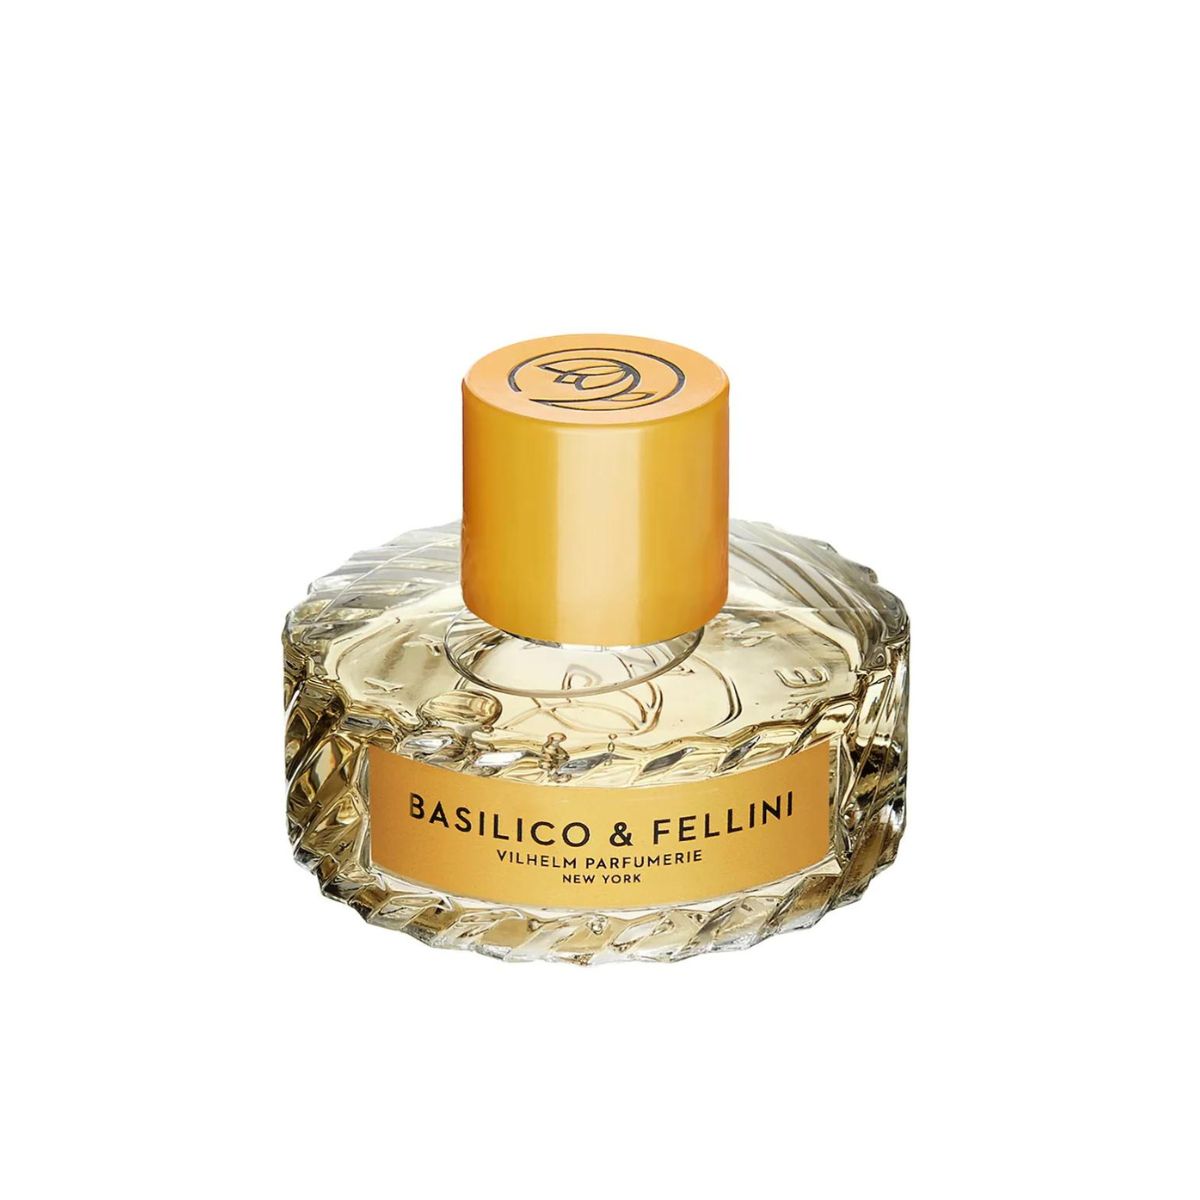 Vilhelm Parfumerie Basilico & Fellini Perfume